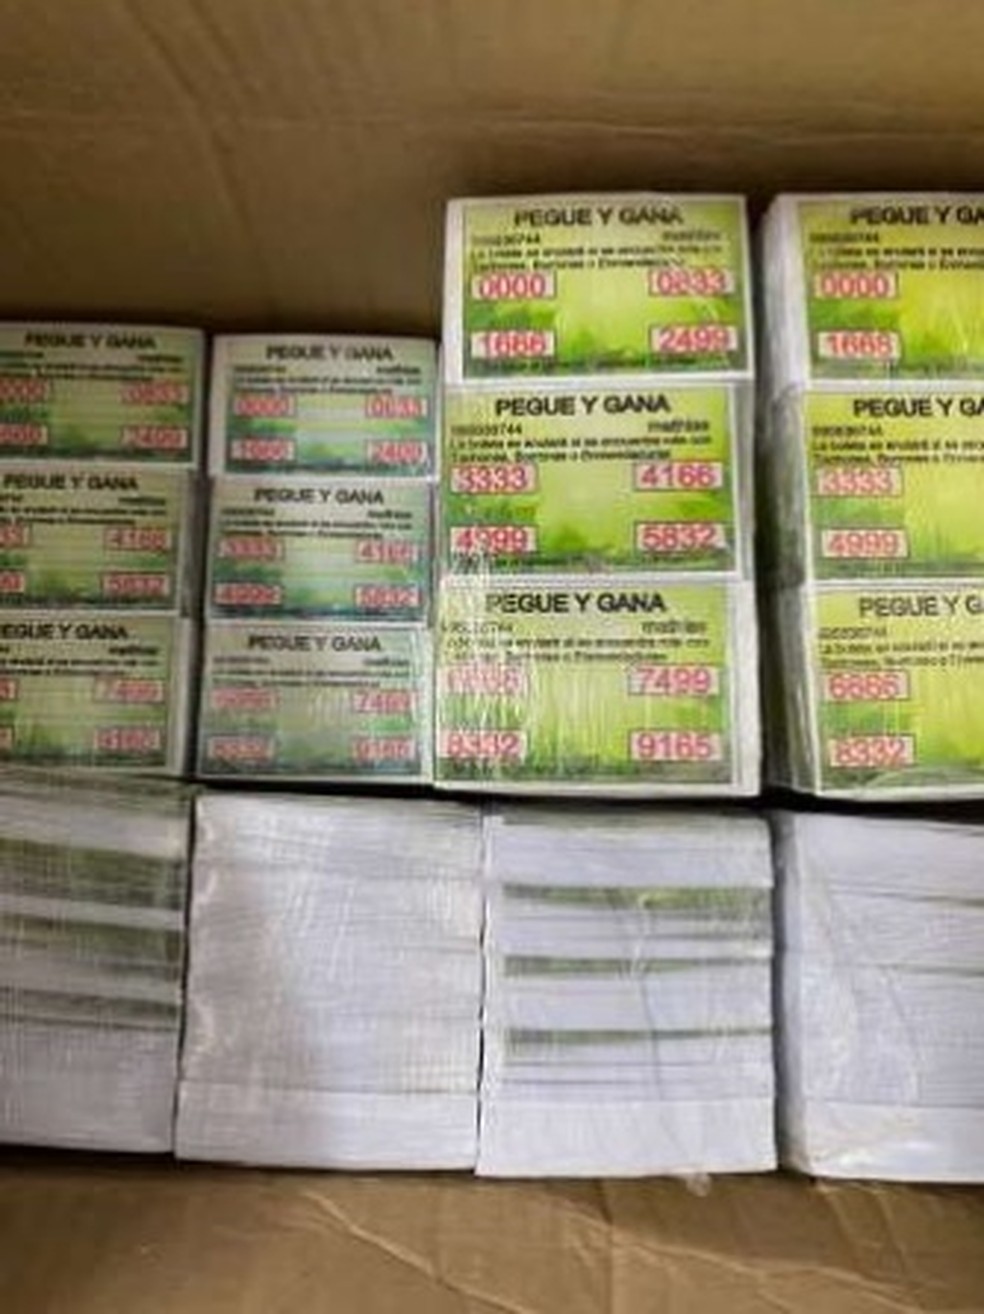 Cartelas de bingo escritas em espanhol foram encontradas durante operação Jogos de Azar, em Paulista, no Grande Recife — Foto: Polícia Civil/Divulgação